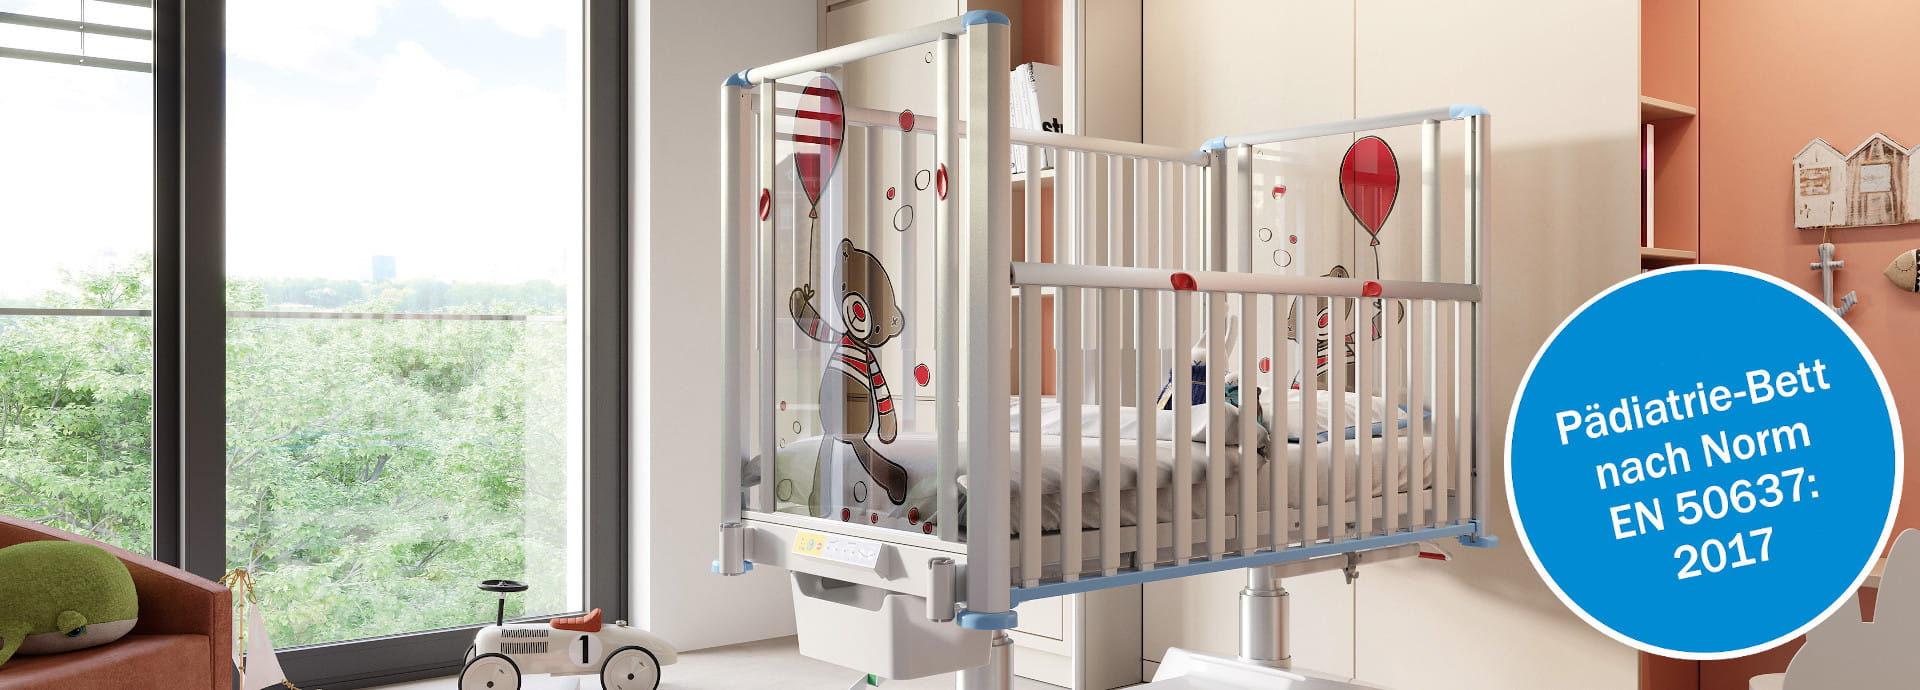 tom 2 - Voll elektrisch verstellbares Kleinkindbett mit 360° Rundum-Schutz